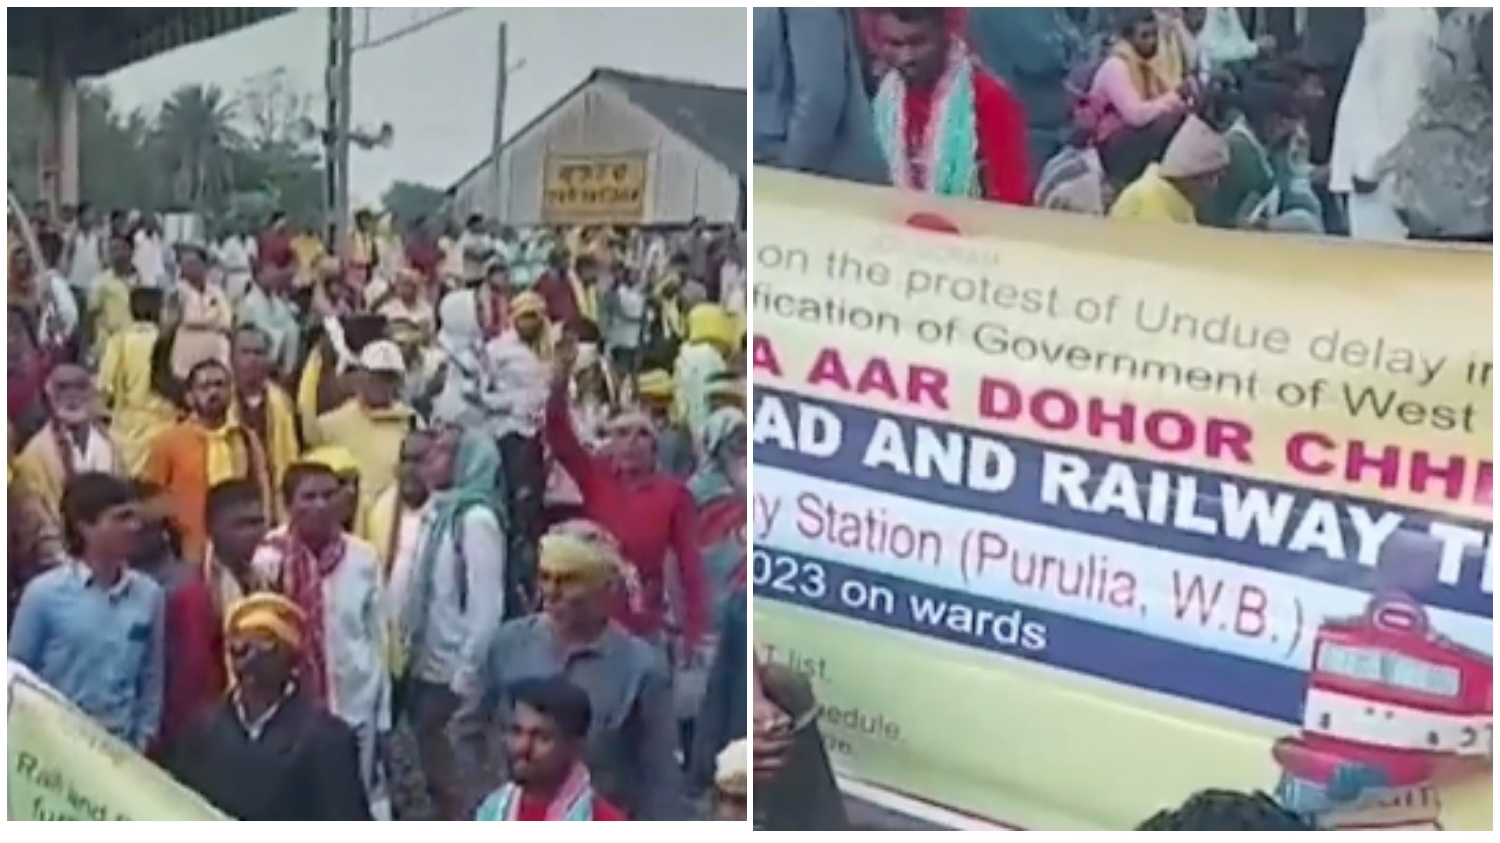 Kurmi Protest: একটানা চারদিন ধরে অবরুদ্ধ রেল-সড়ক! কুড়মি আন্দোলনে নাকাল যাত্রীরা